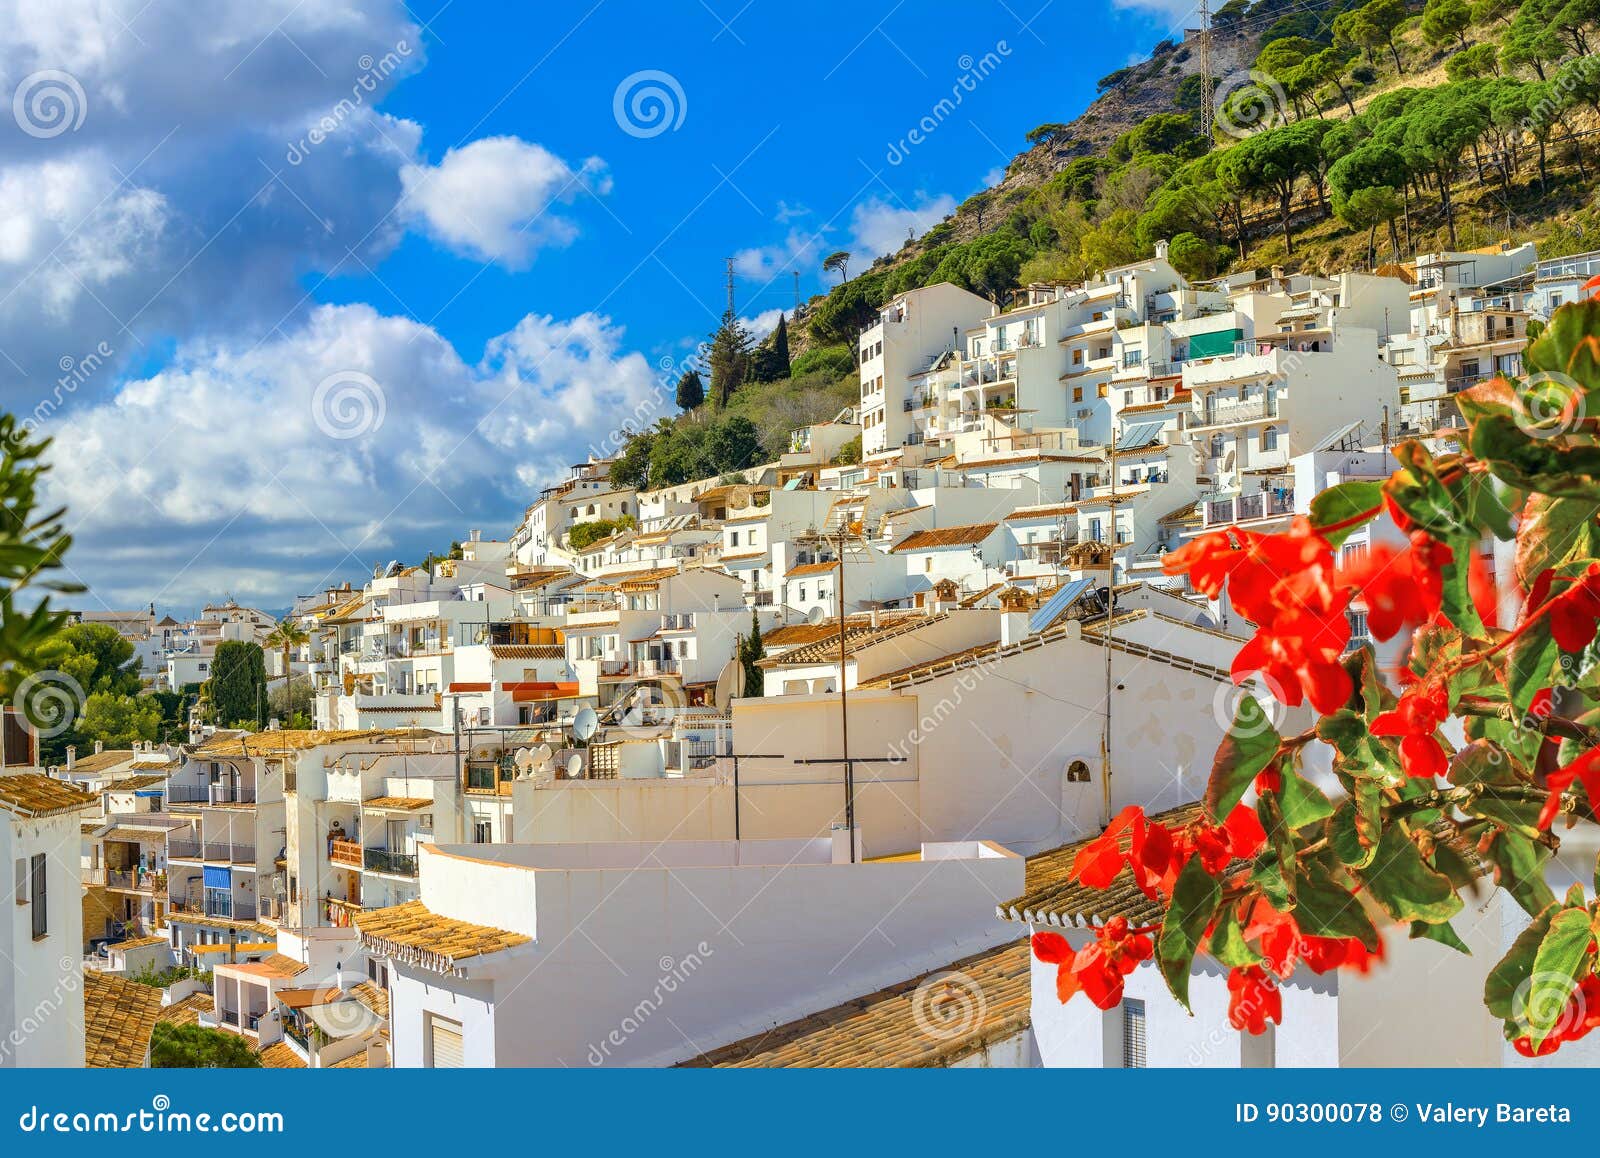 white village of mijas. costa del sol, andalusia, spain